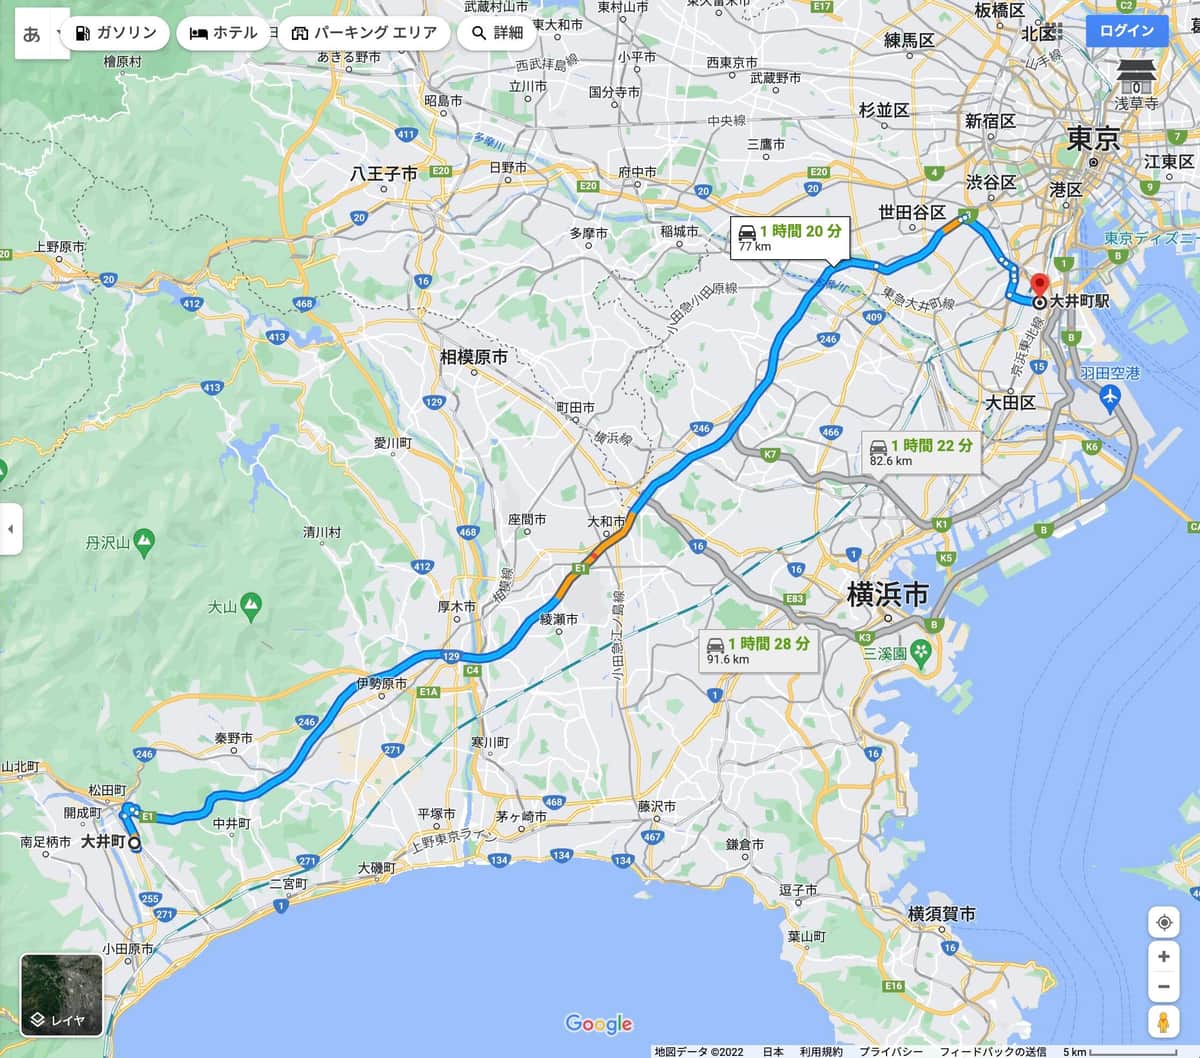 「大井町」同士のおよその距離、Googleマップより